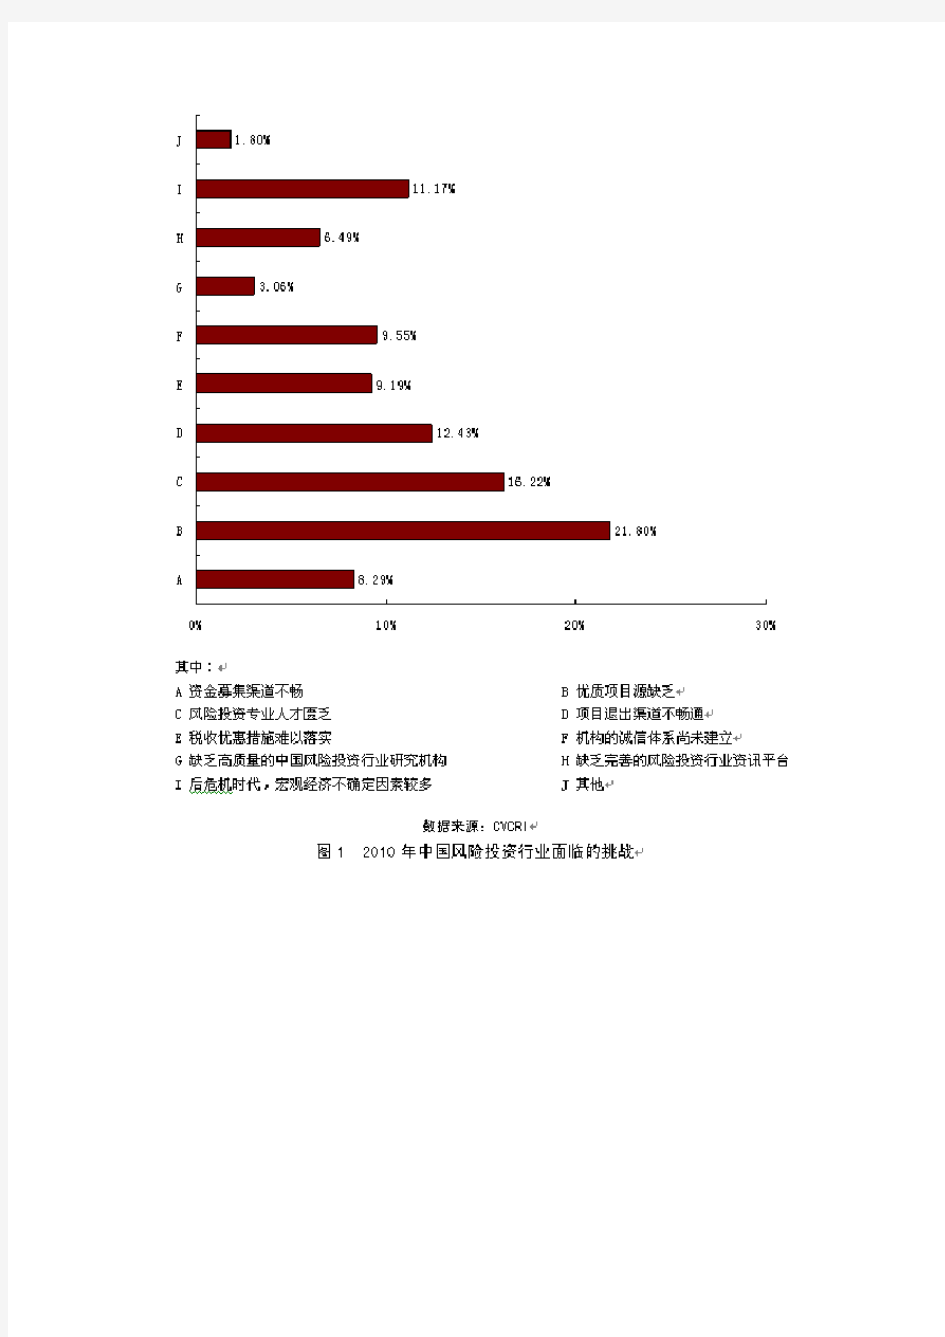 2009年中国风险投资行业报告